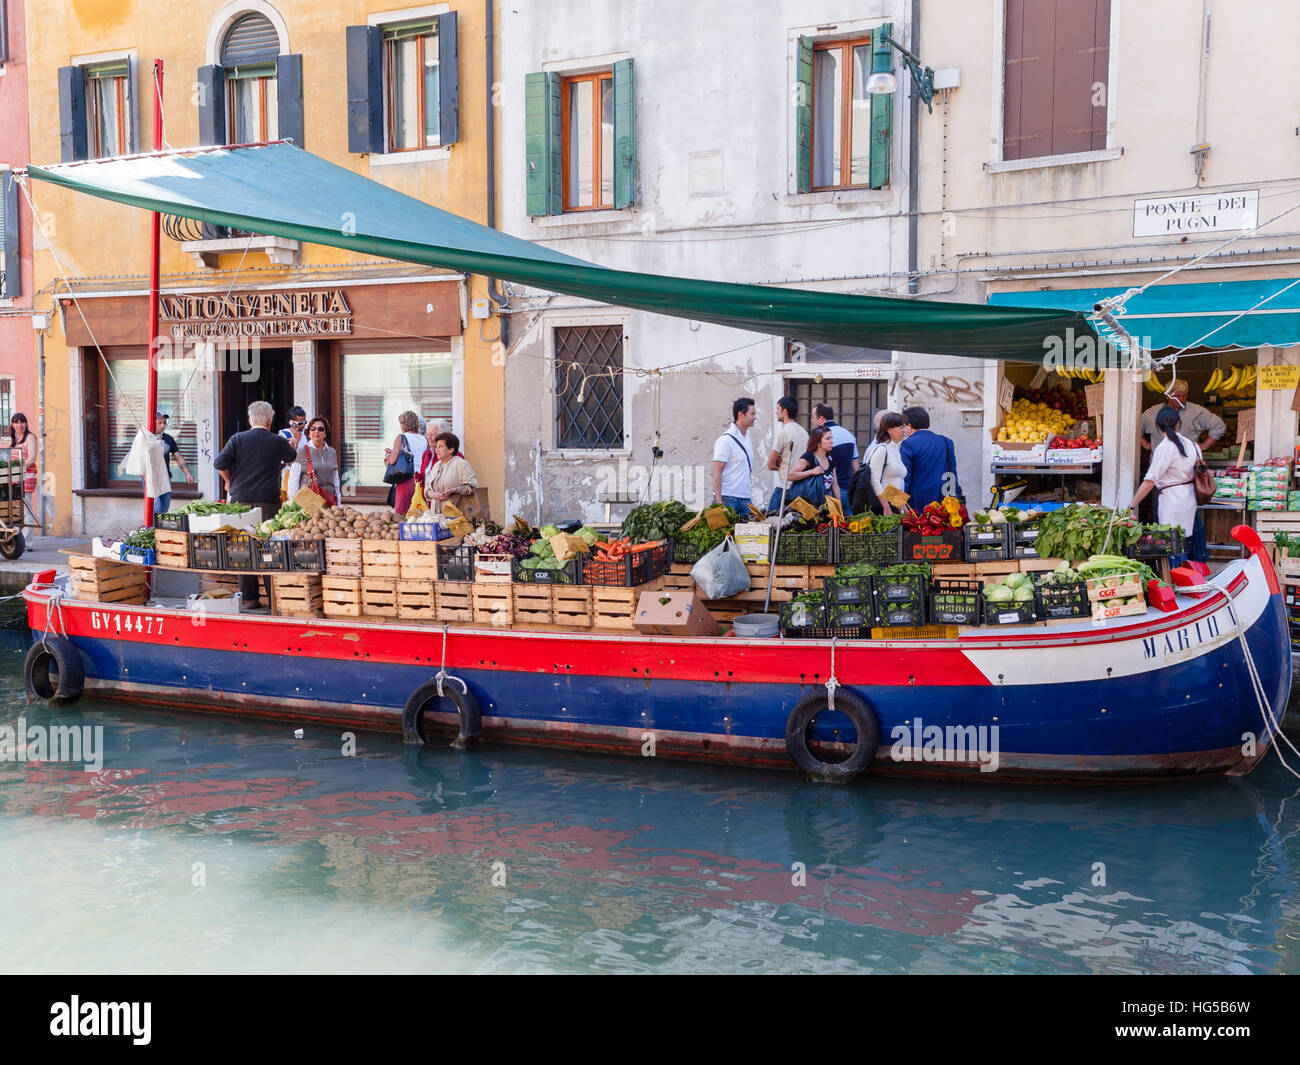 Obst- und Gemüseladen auf einem Lastkahn, der am Kanal in Ponte Dei Pugni, Venedig, Italien, festgemacht ist. Stockfoto